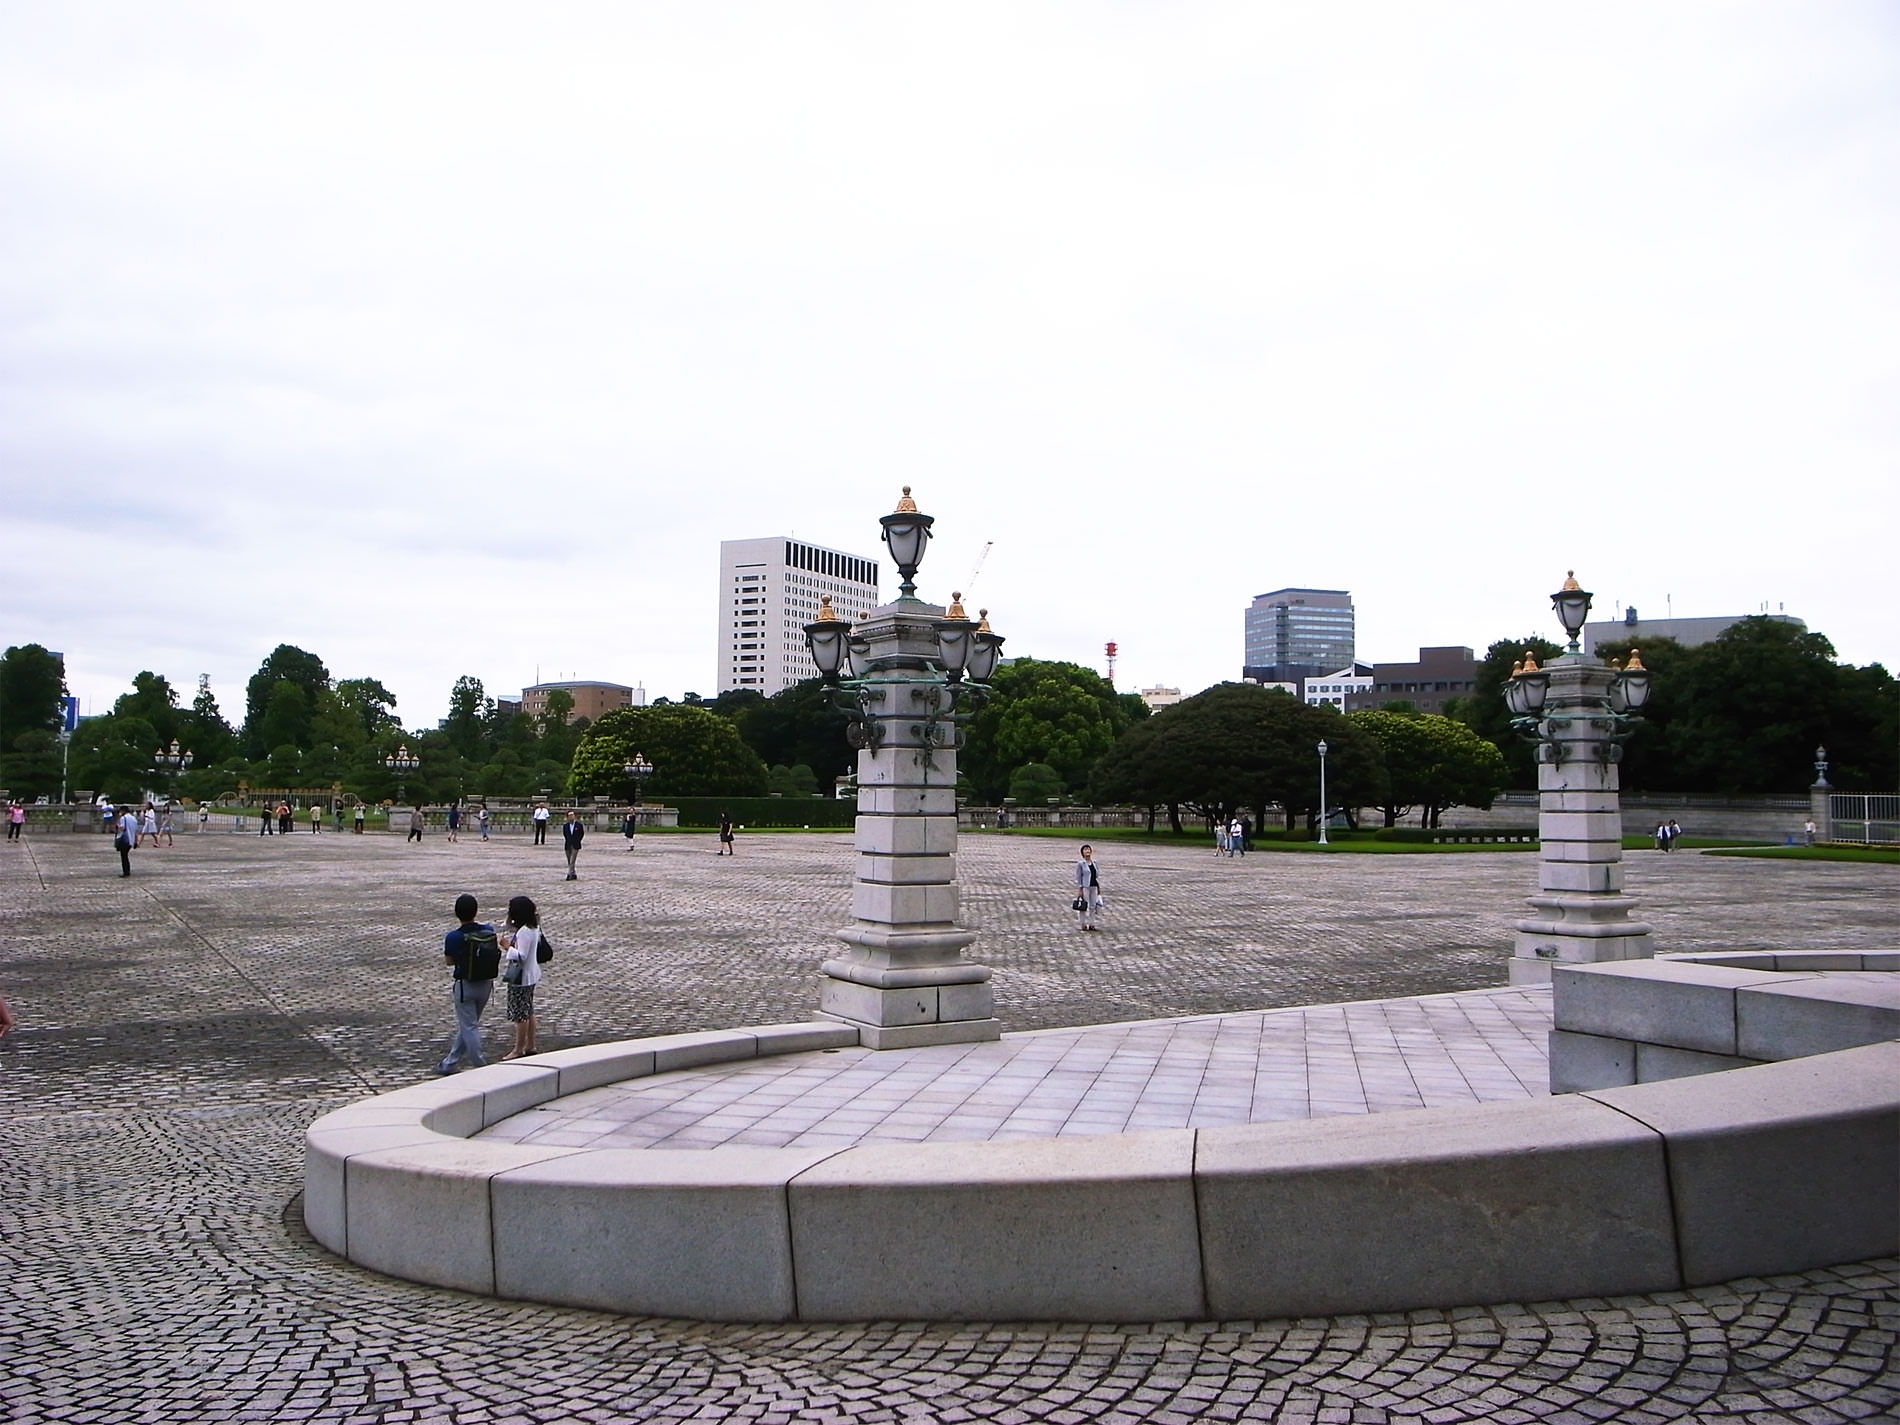 state_guest_house_akasaka_palace_tokyo_2015 | 迎賓館赤坂離宮を見学に行ってきました / 2015